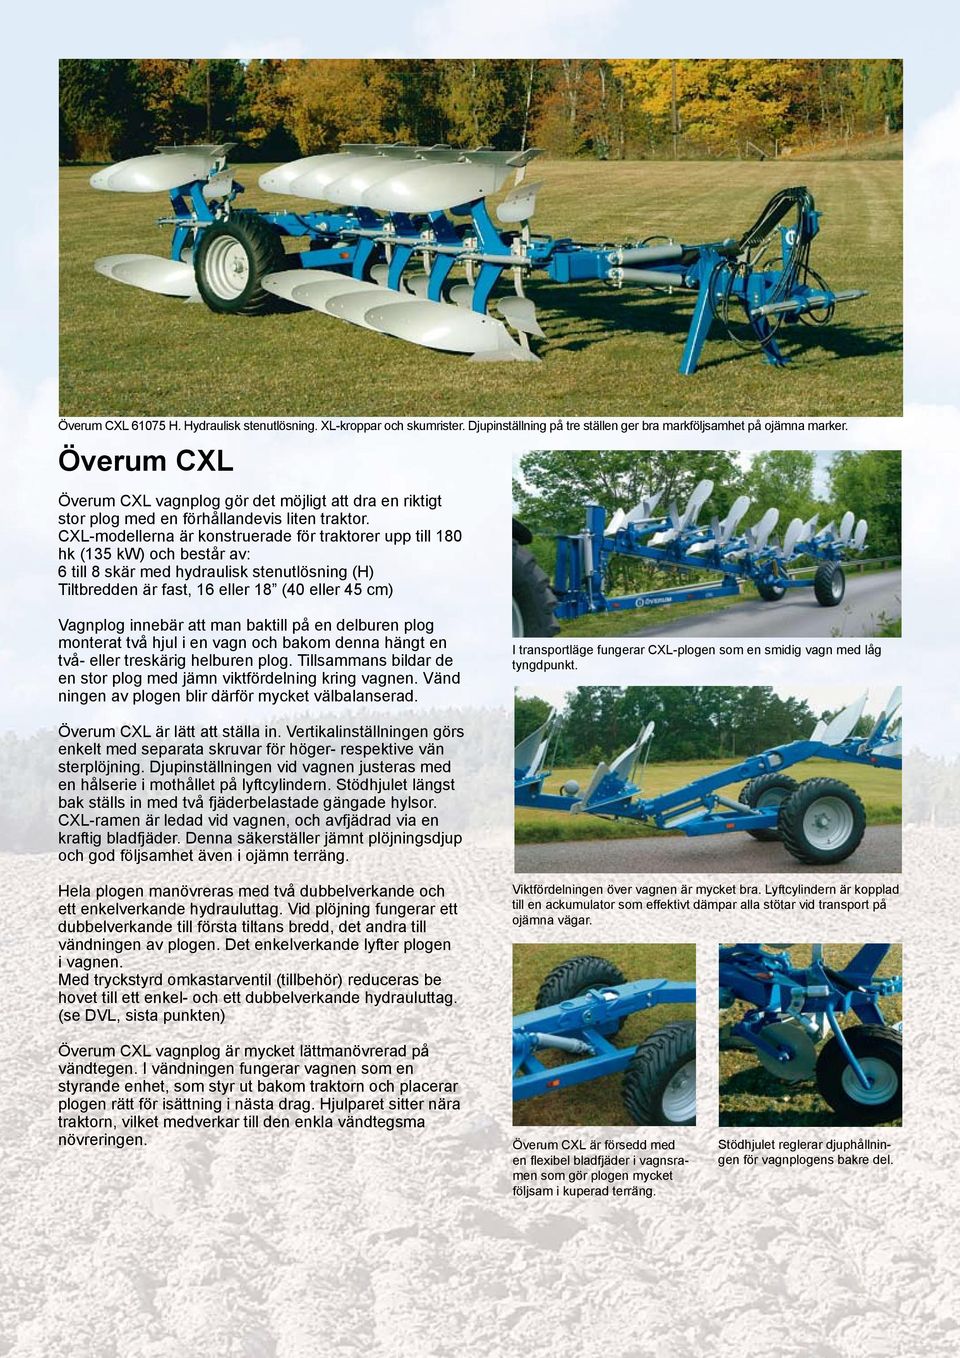 CXL-modellerna är konstruerade för traktorer upp till 180 hk (135 kw) och består av: 6 till 8 skär med hydraulisk stenutlösning (H) Tiltbredden är fast, 16 eller 18 (40 eller 45 cm) Vagnplog innebär